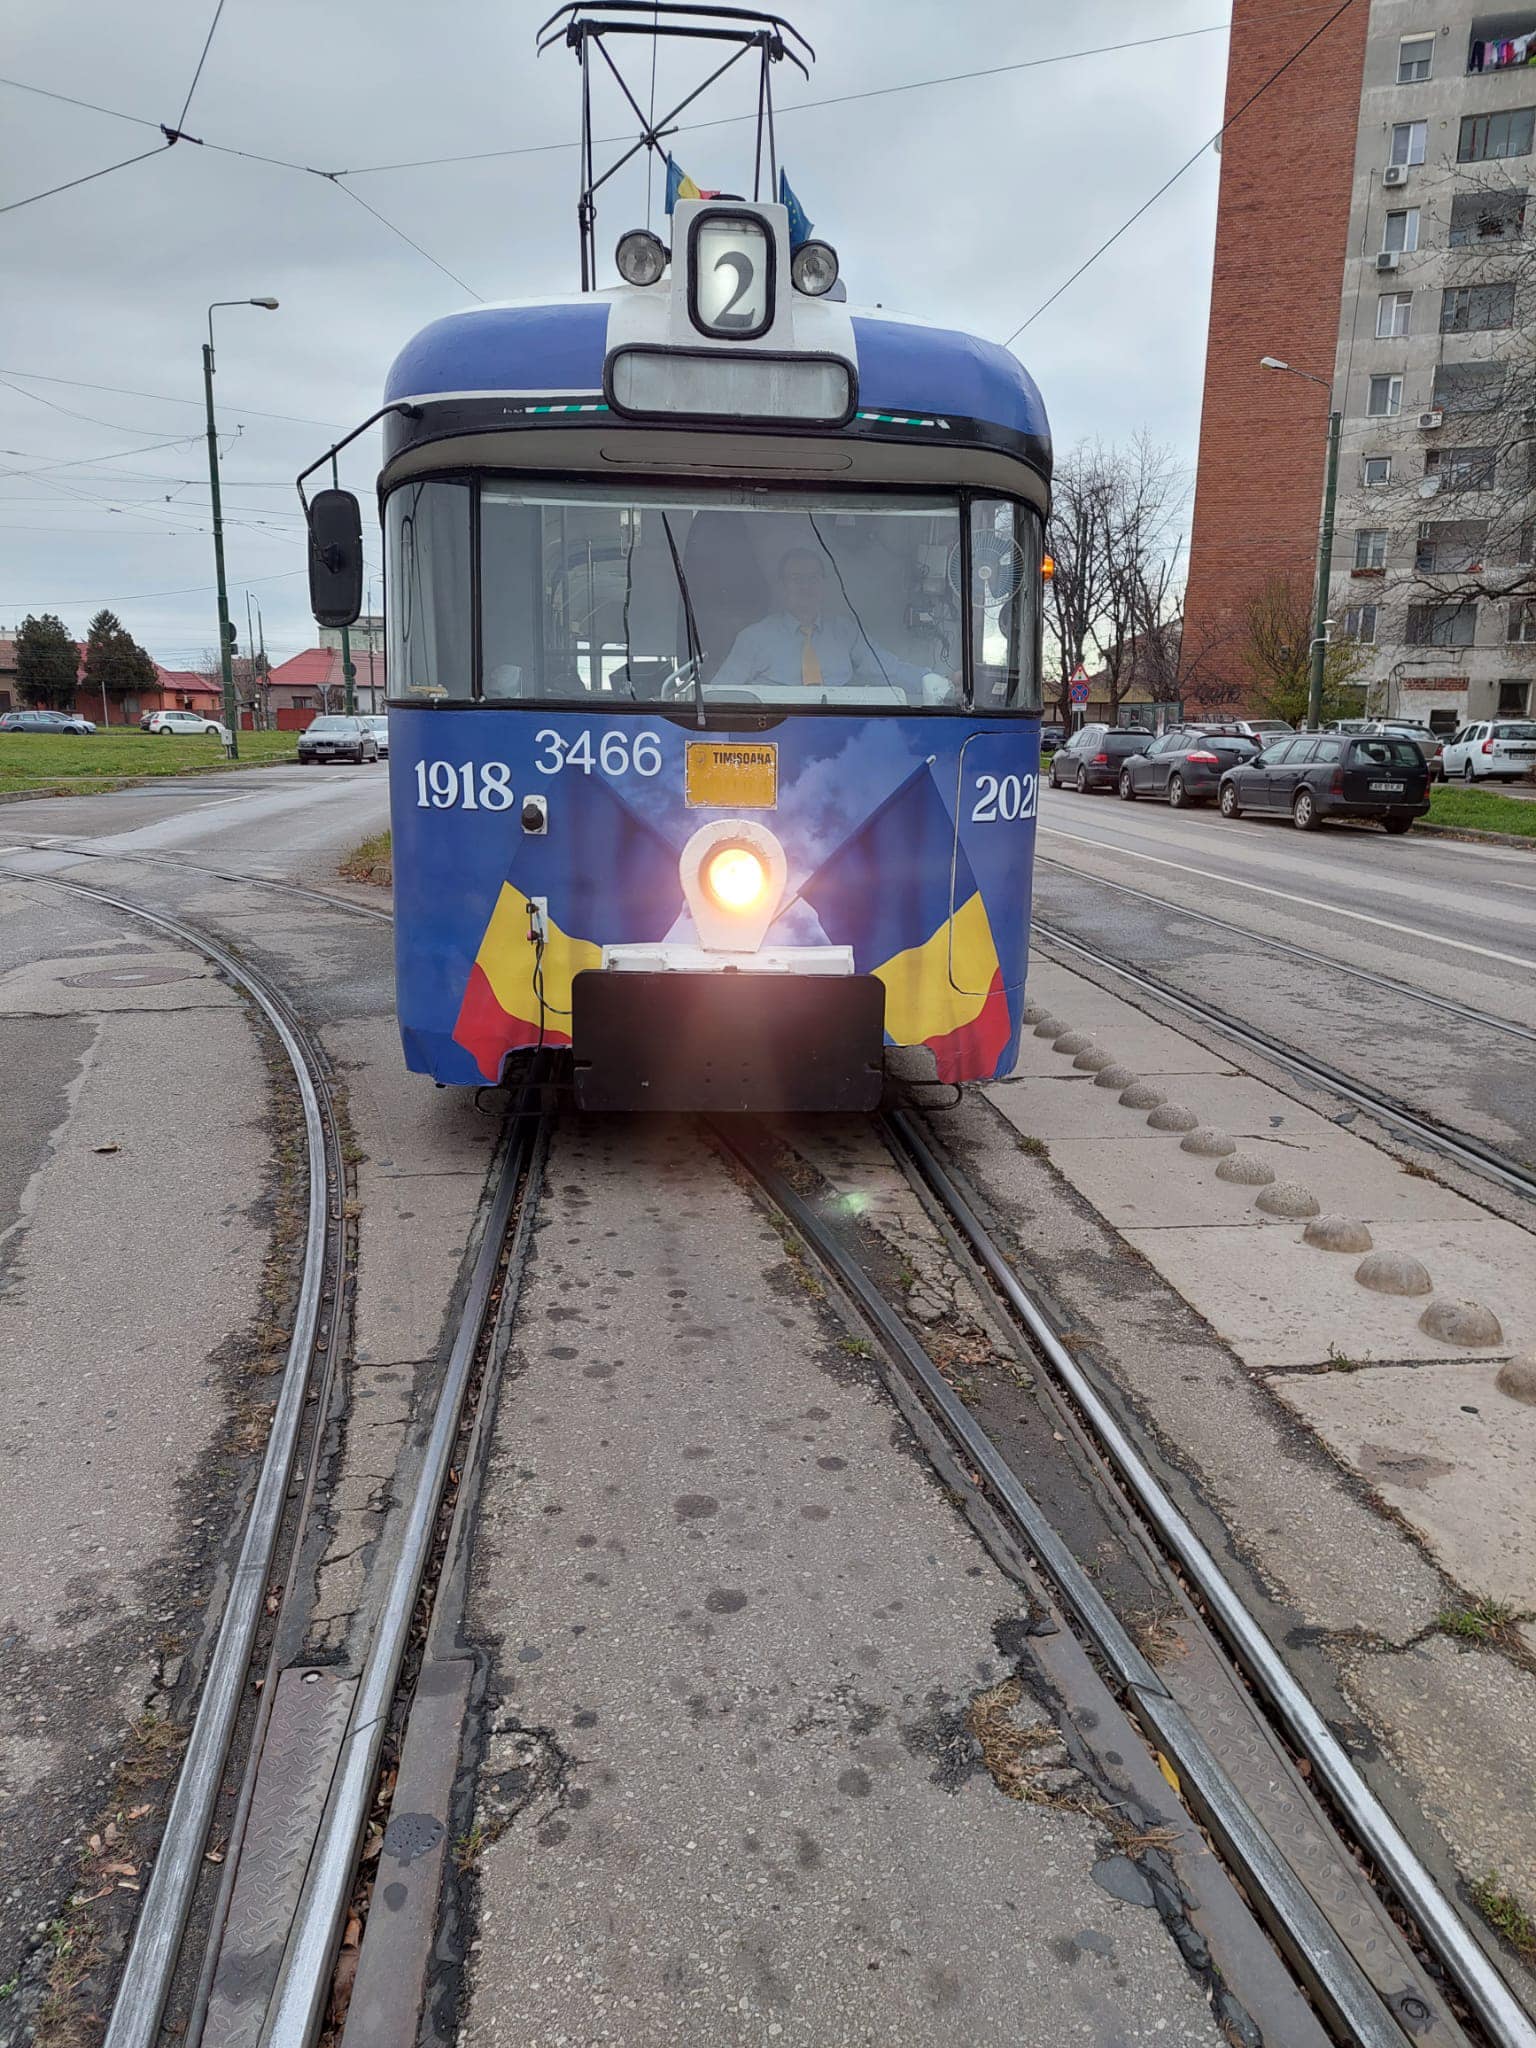 Tramvai personalizat în culorile României